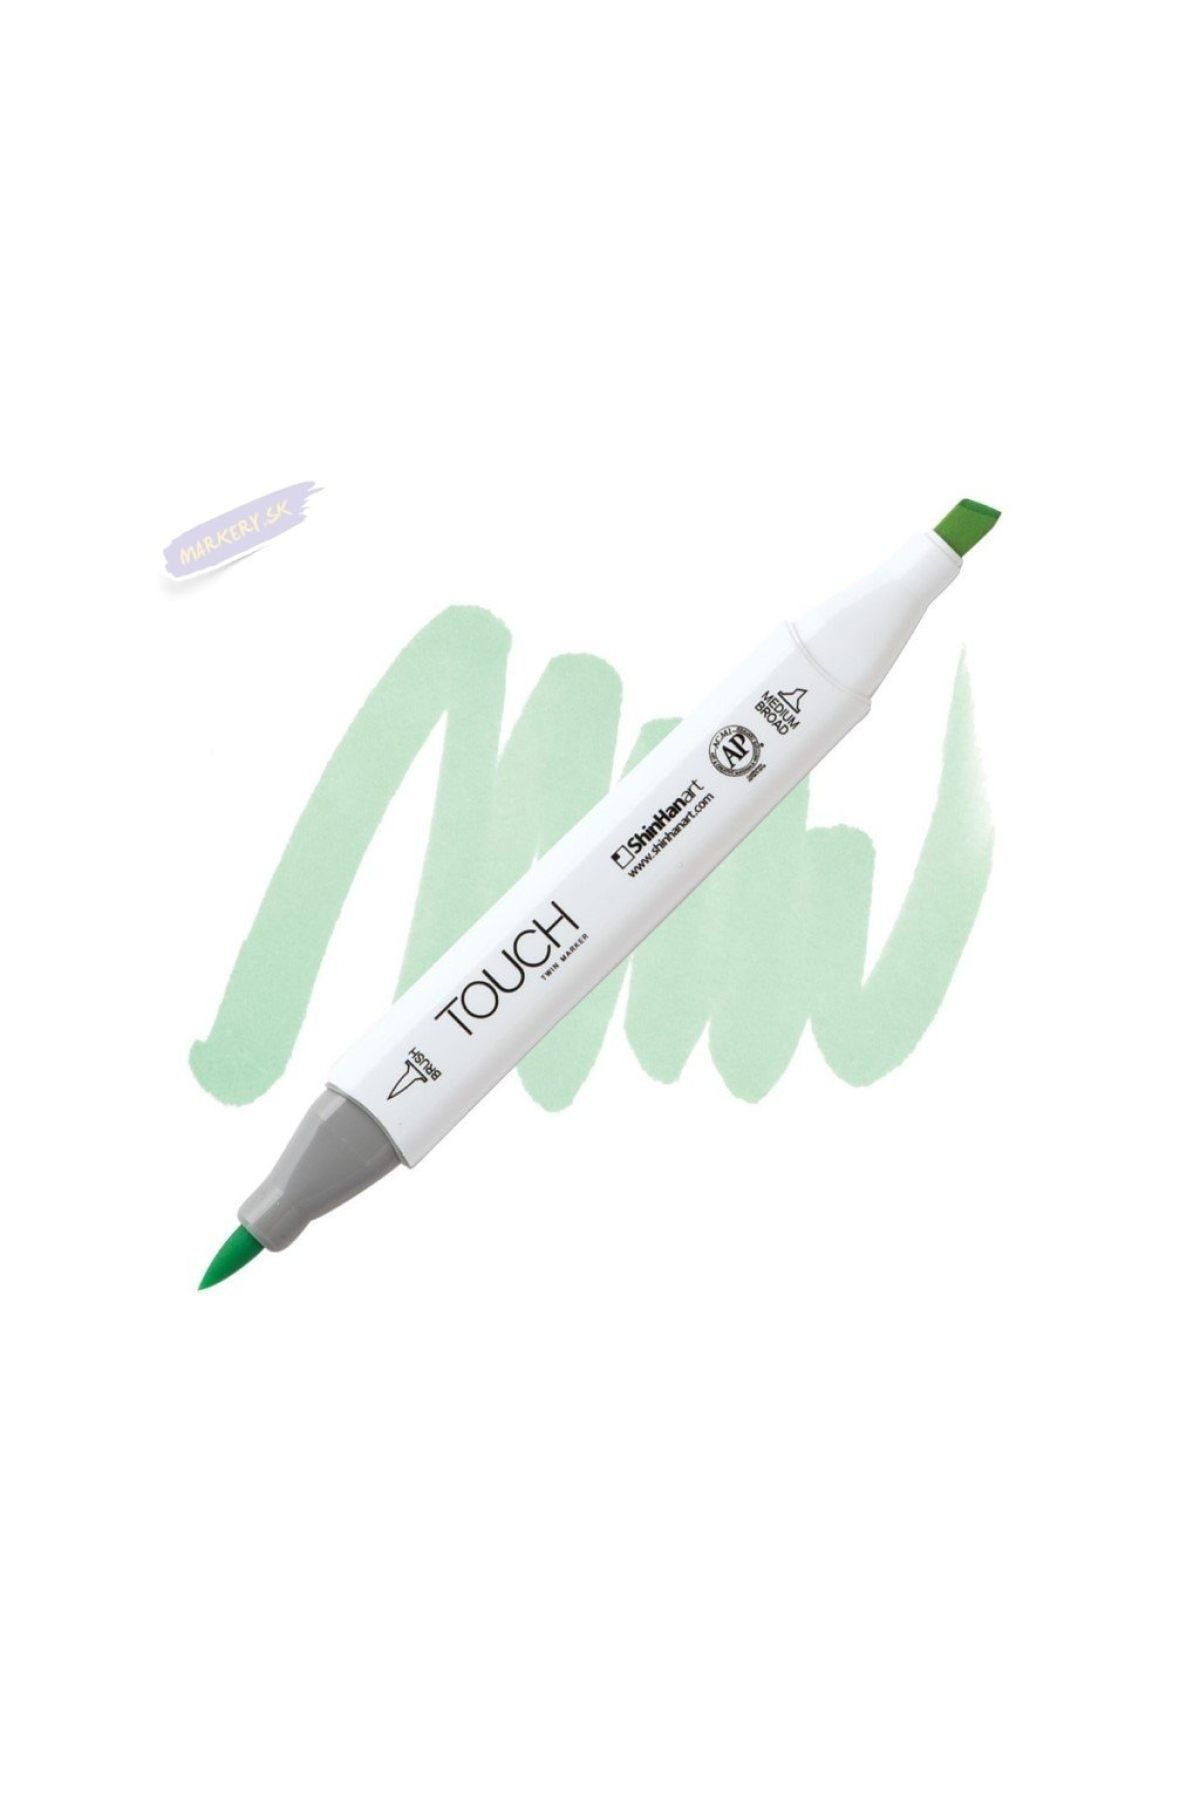 Shinhan Art Touch Twın Brush Pen : Çift Taraflı Marker : Gy167 Pale Green Light